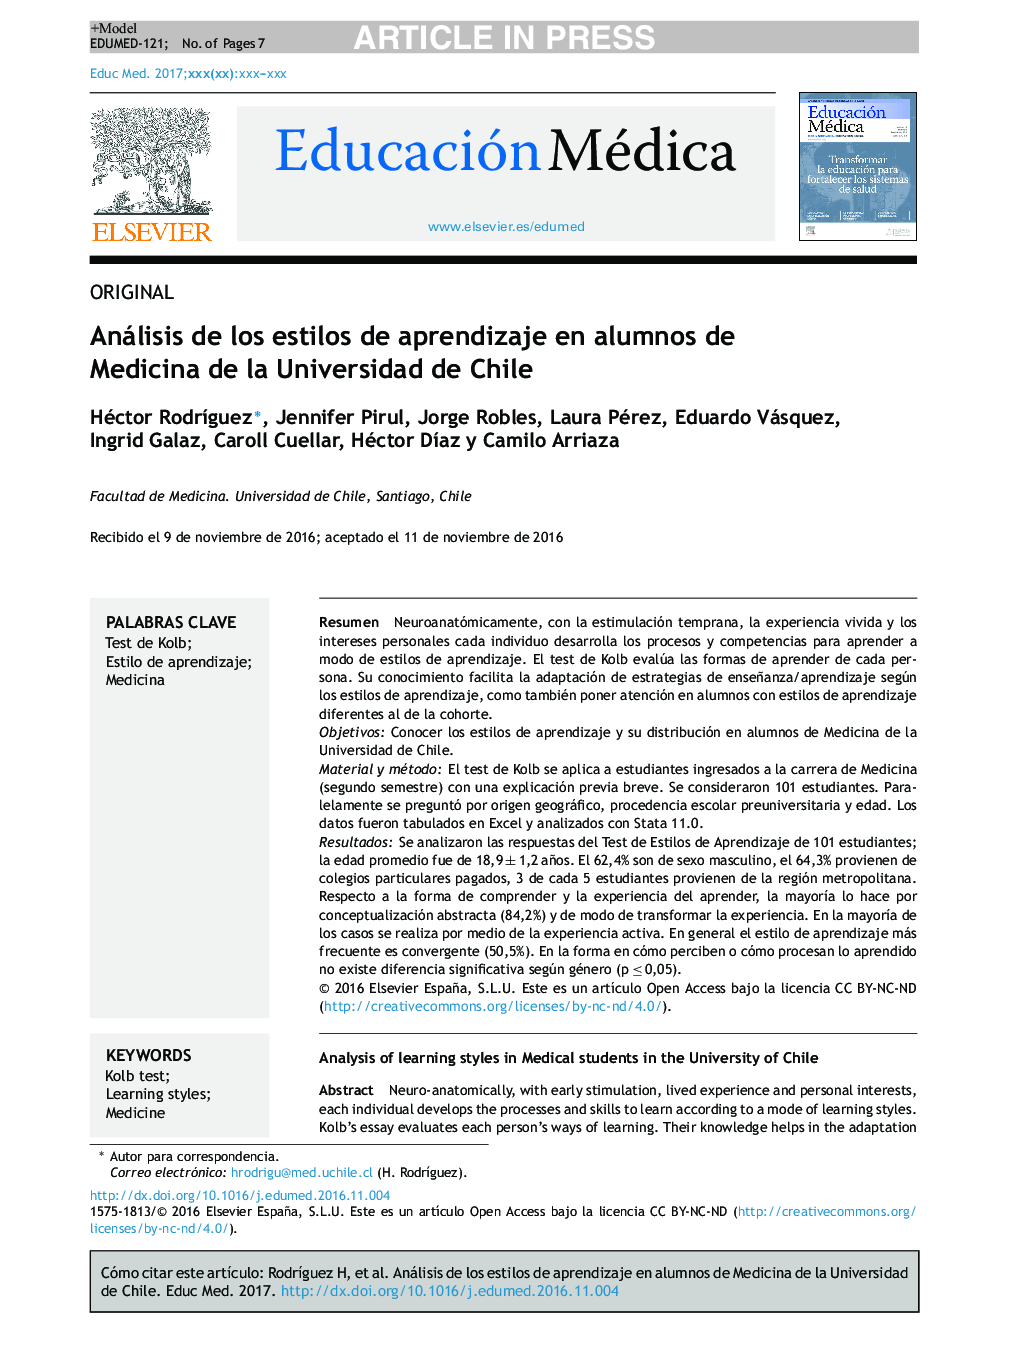 آنالیز سبک های یادگیری در دانشجویان پزشکی دانشگاه شیلی 